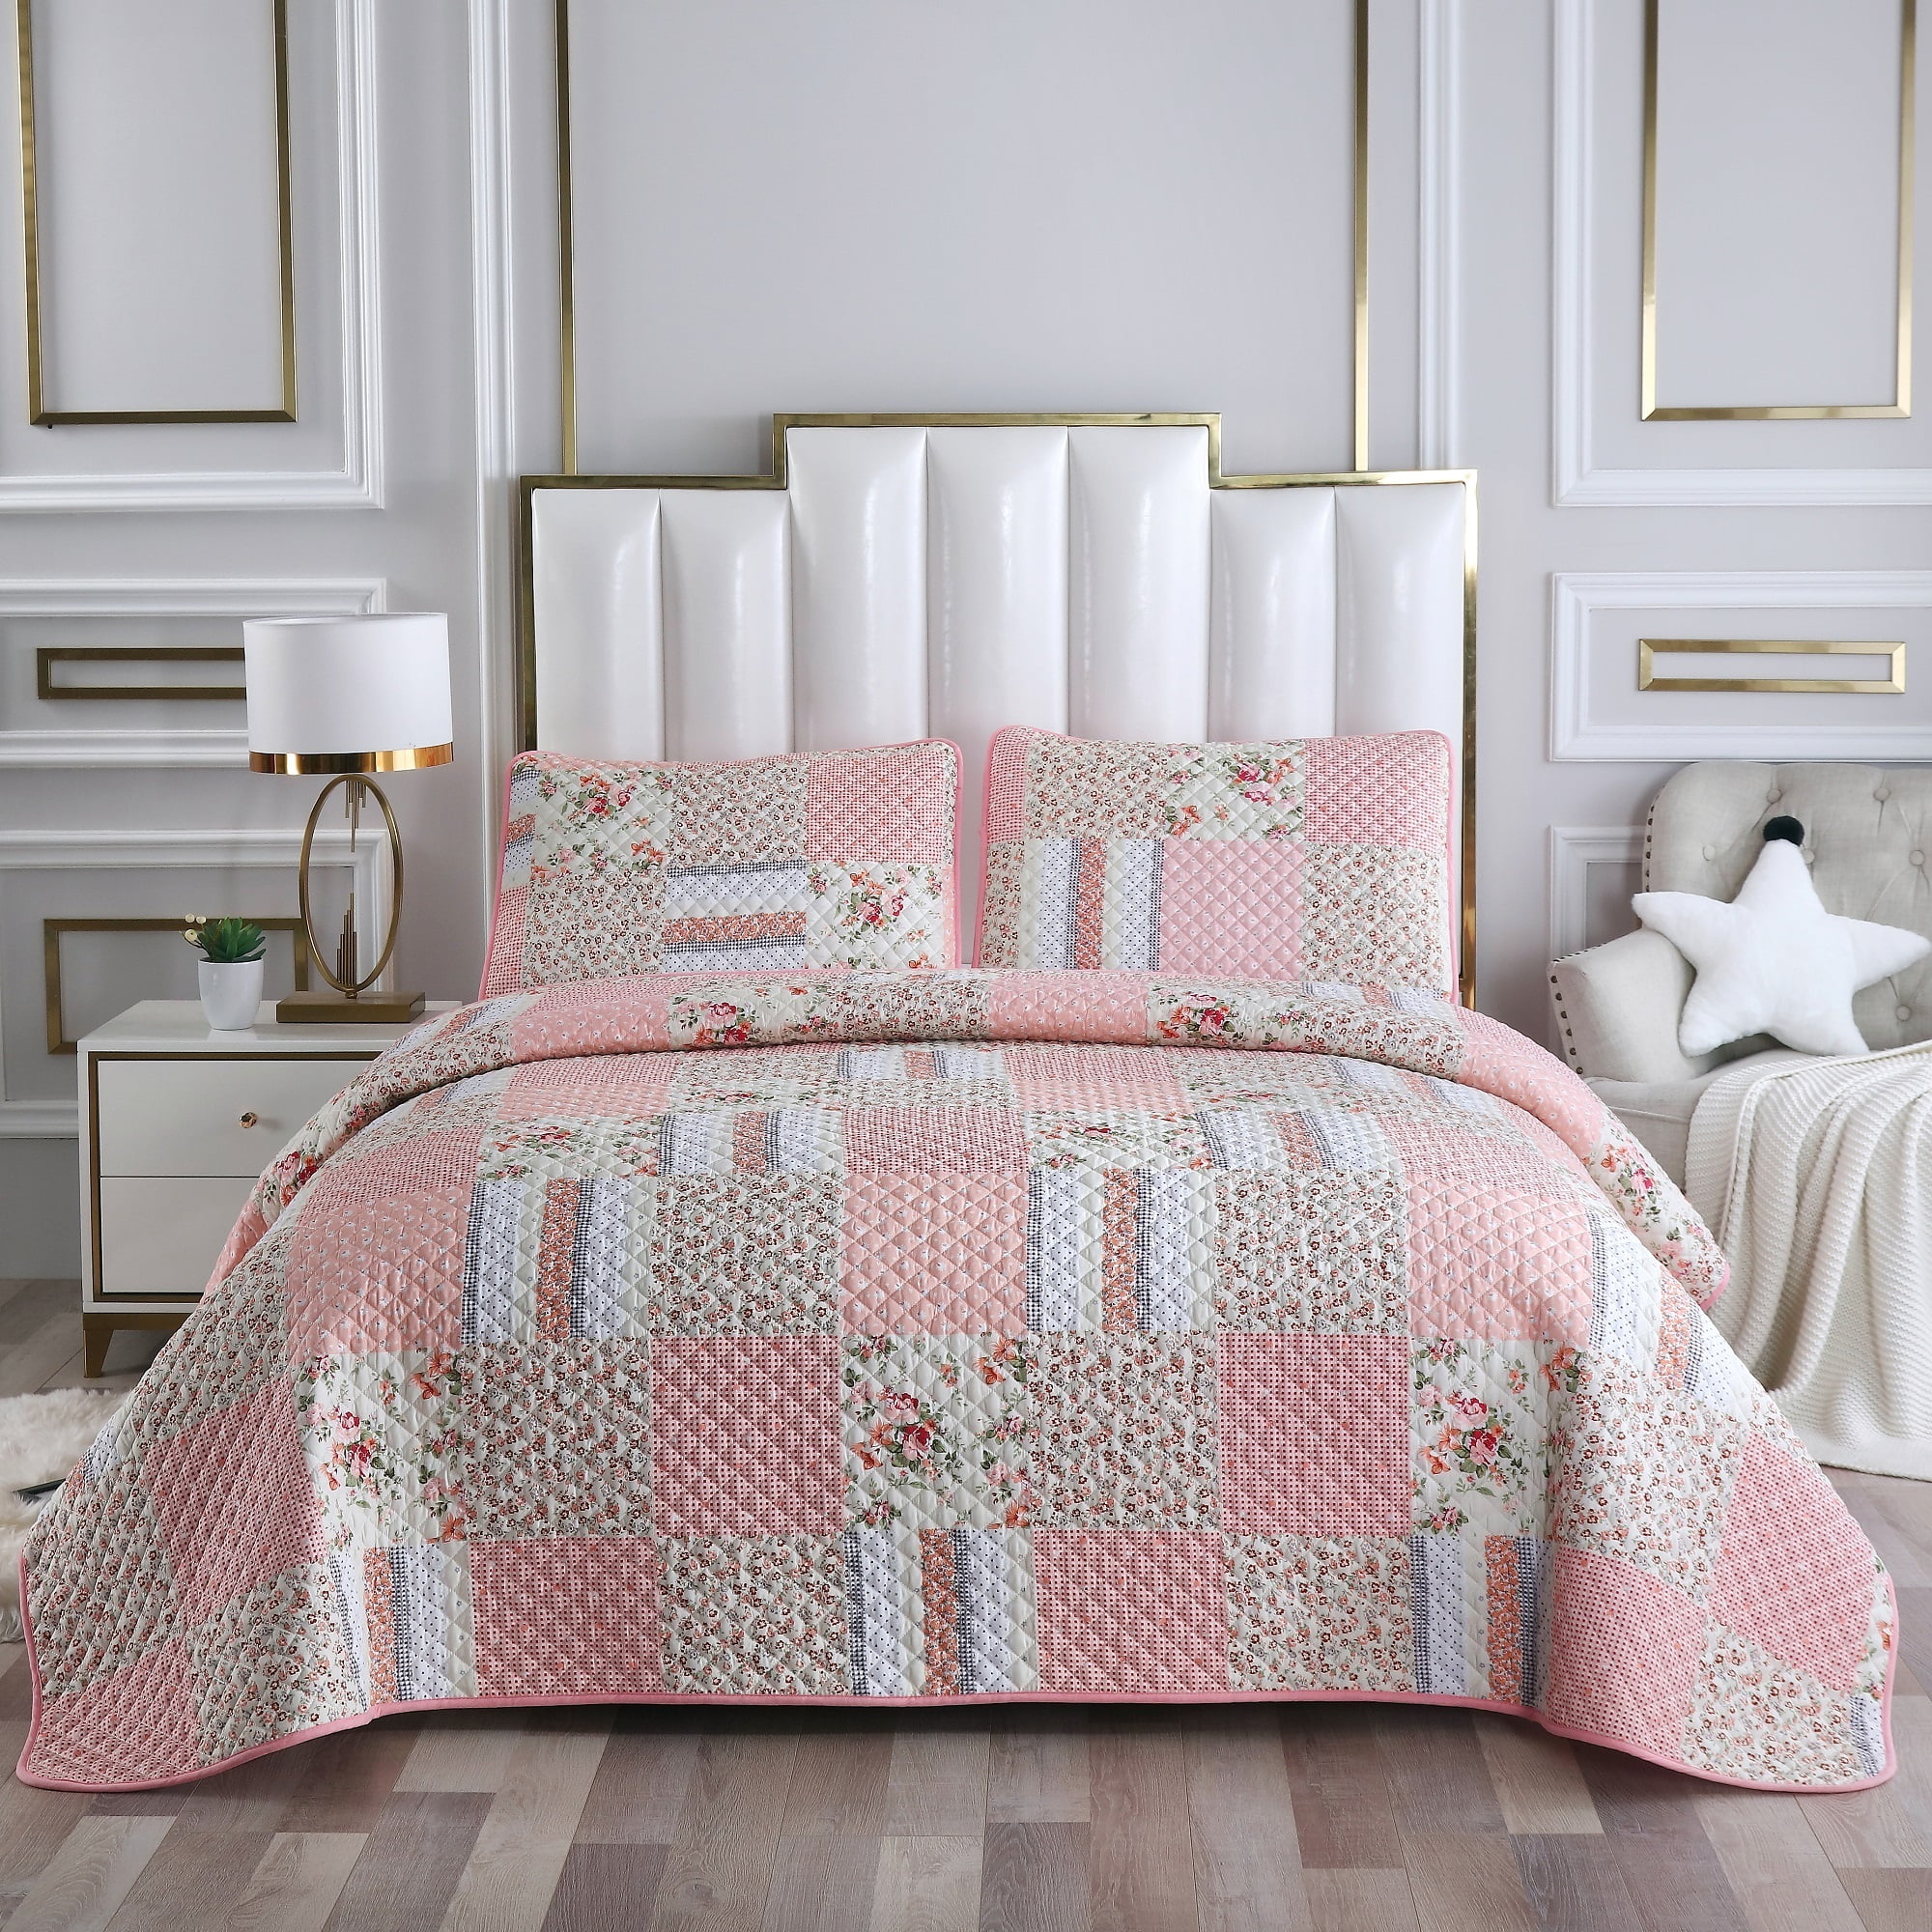 Details about   Feminine Waves Pillow Sham Decorative Pillowcase 3 Sizes Bedroom Decoration 